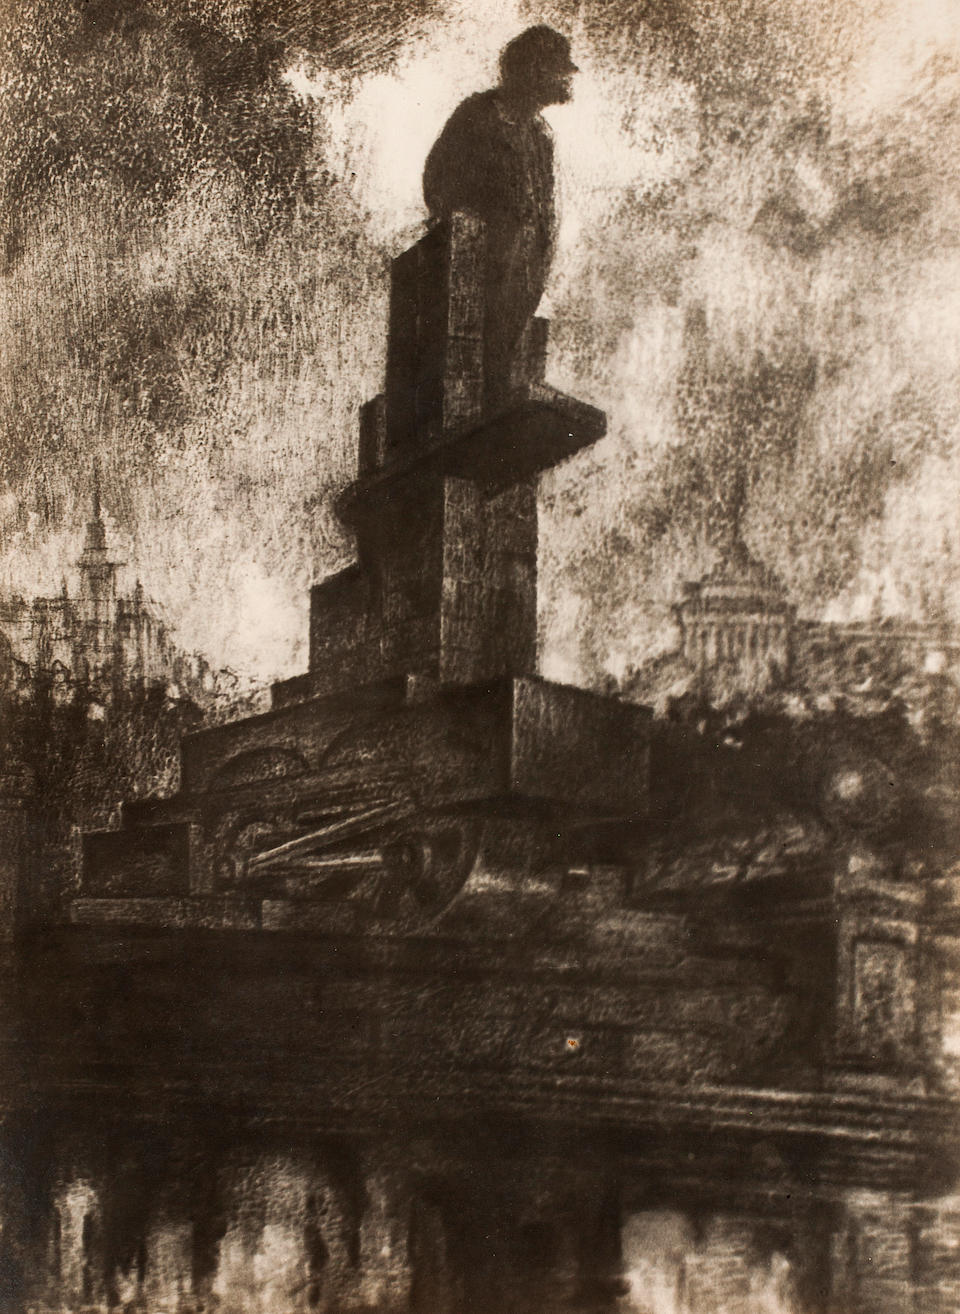 CHERNIKHOV, YAKOV GEORGIEVICH. 1889-1951.